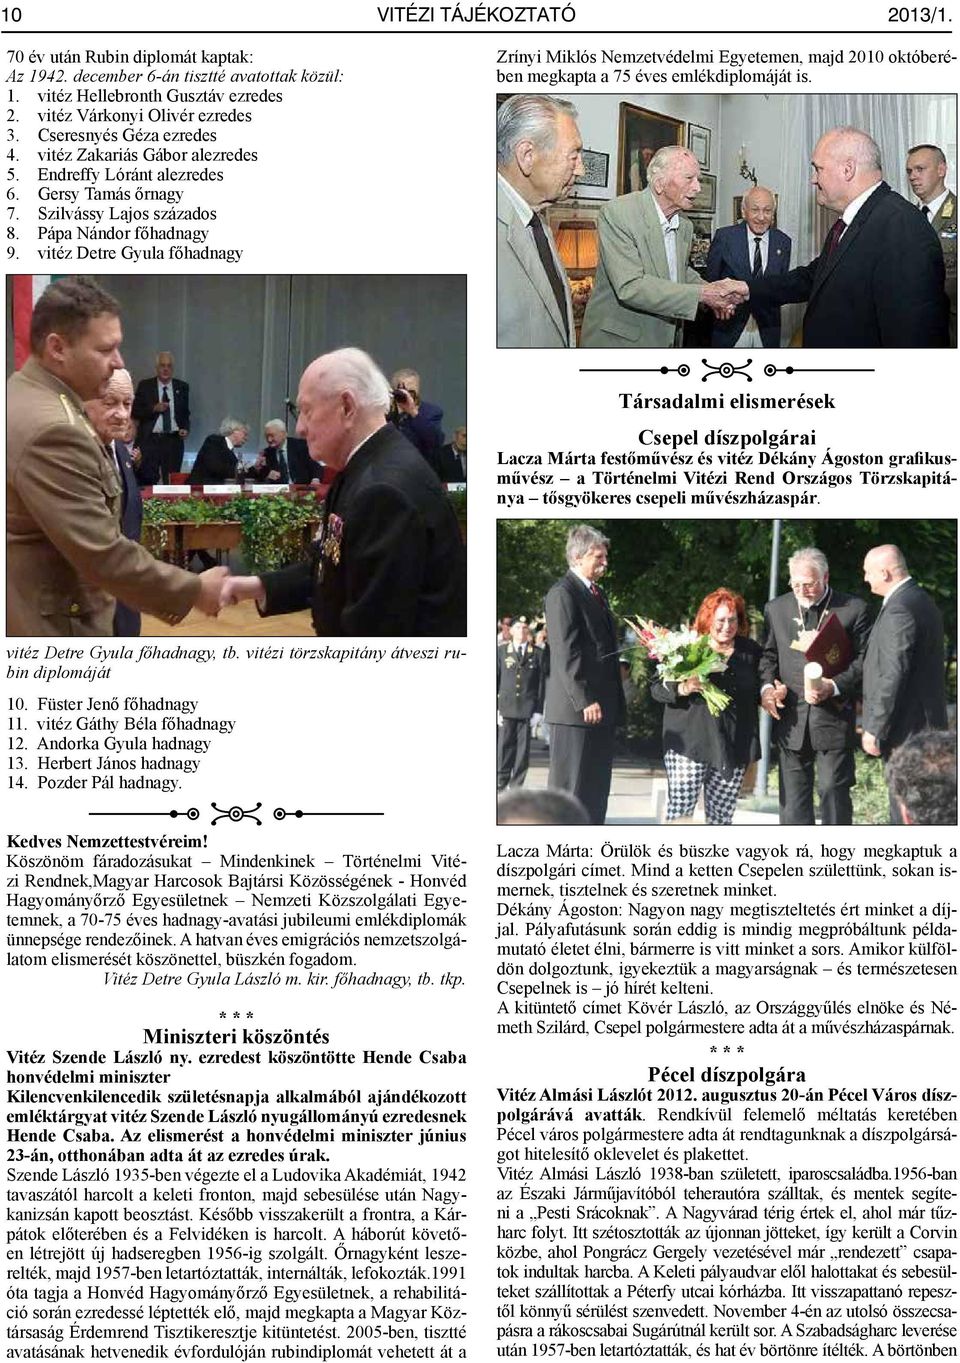 vitéz Detre Gyula főhadnagy Zrínyi Miklós Nemzetvédelmi Egyetemen, majd 2010 októberében megkapta a 75 éves emlékdiplomáját is.